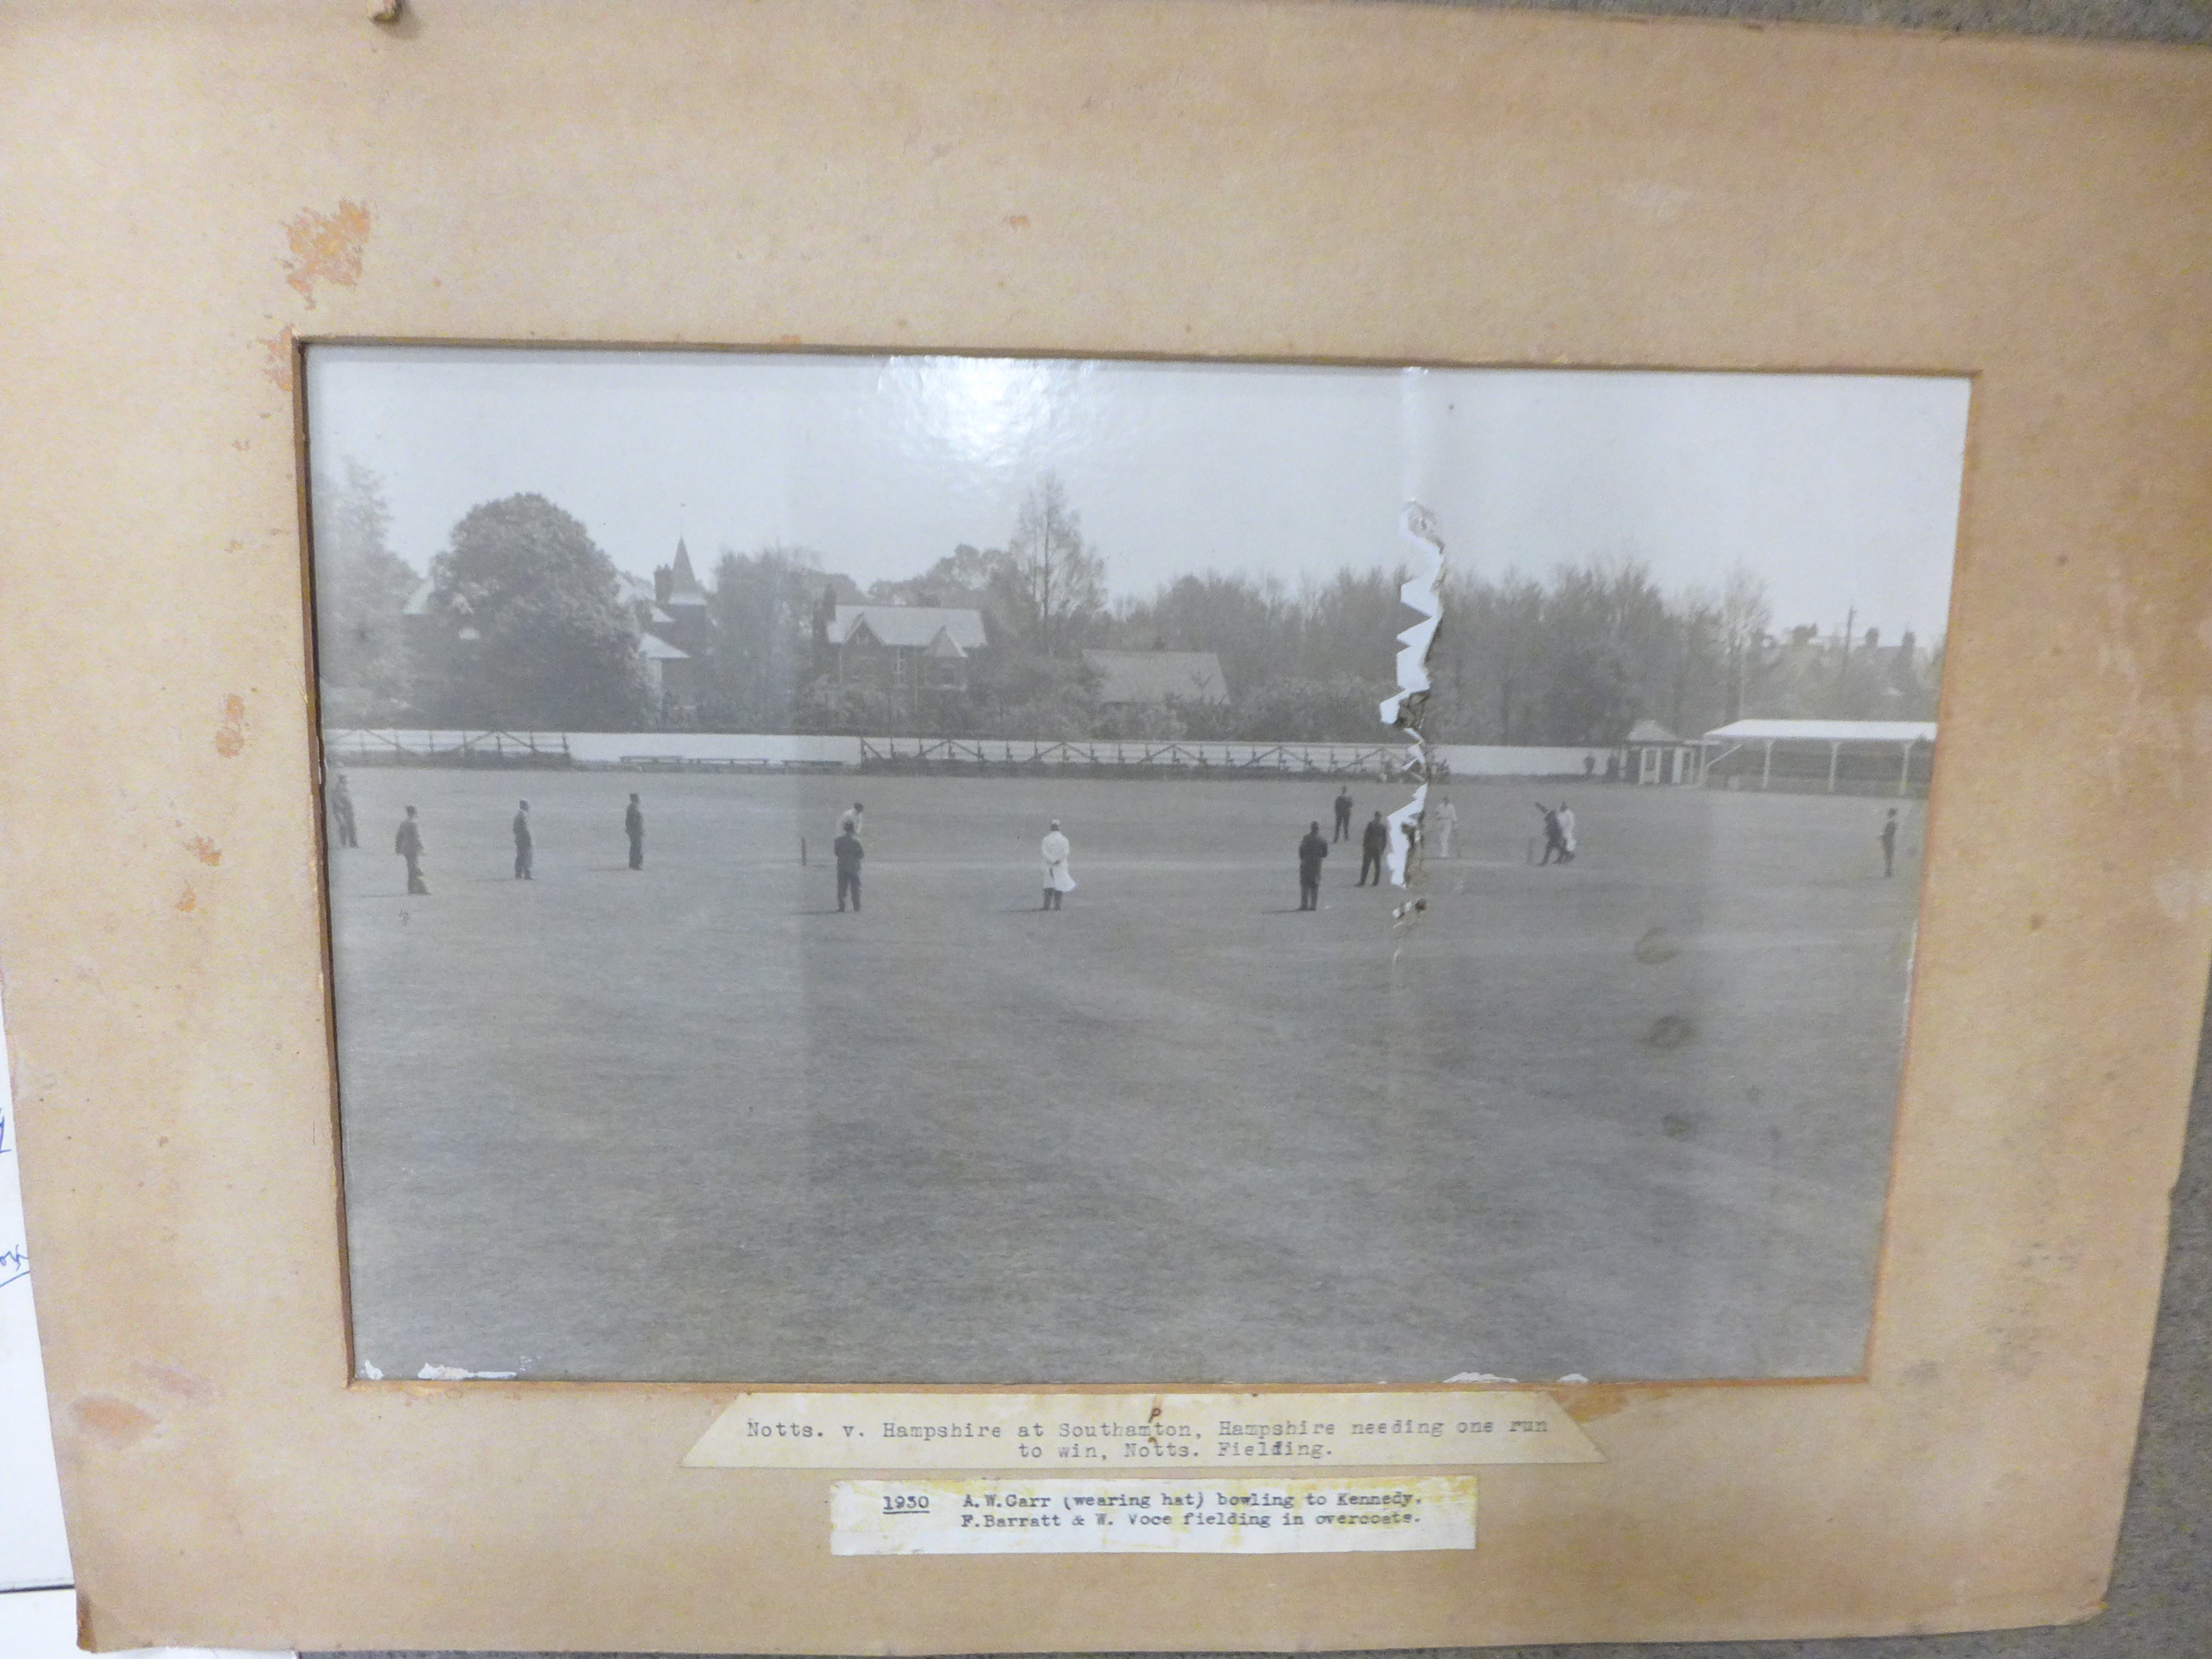 Cricket ephemera and scrap albums with autographs including Larwood, Boycott, Subba Row - Image 19 of 19